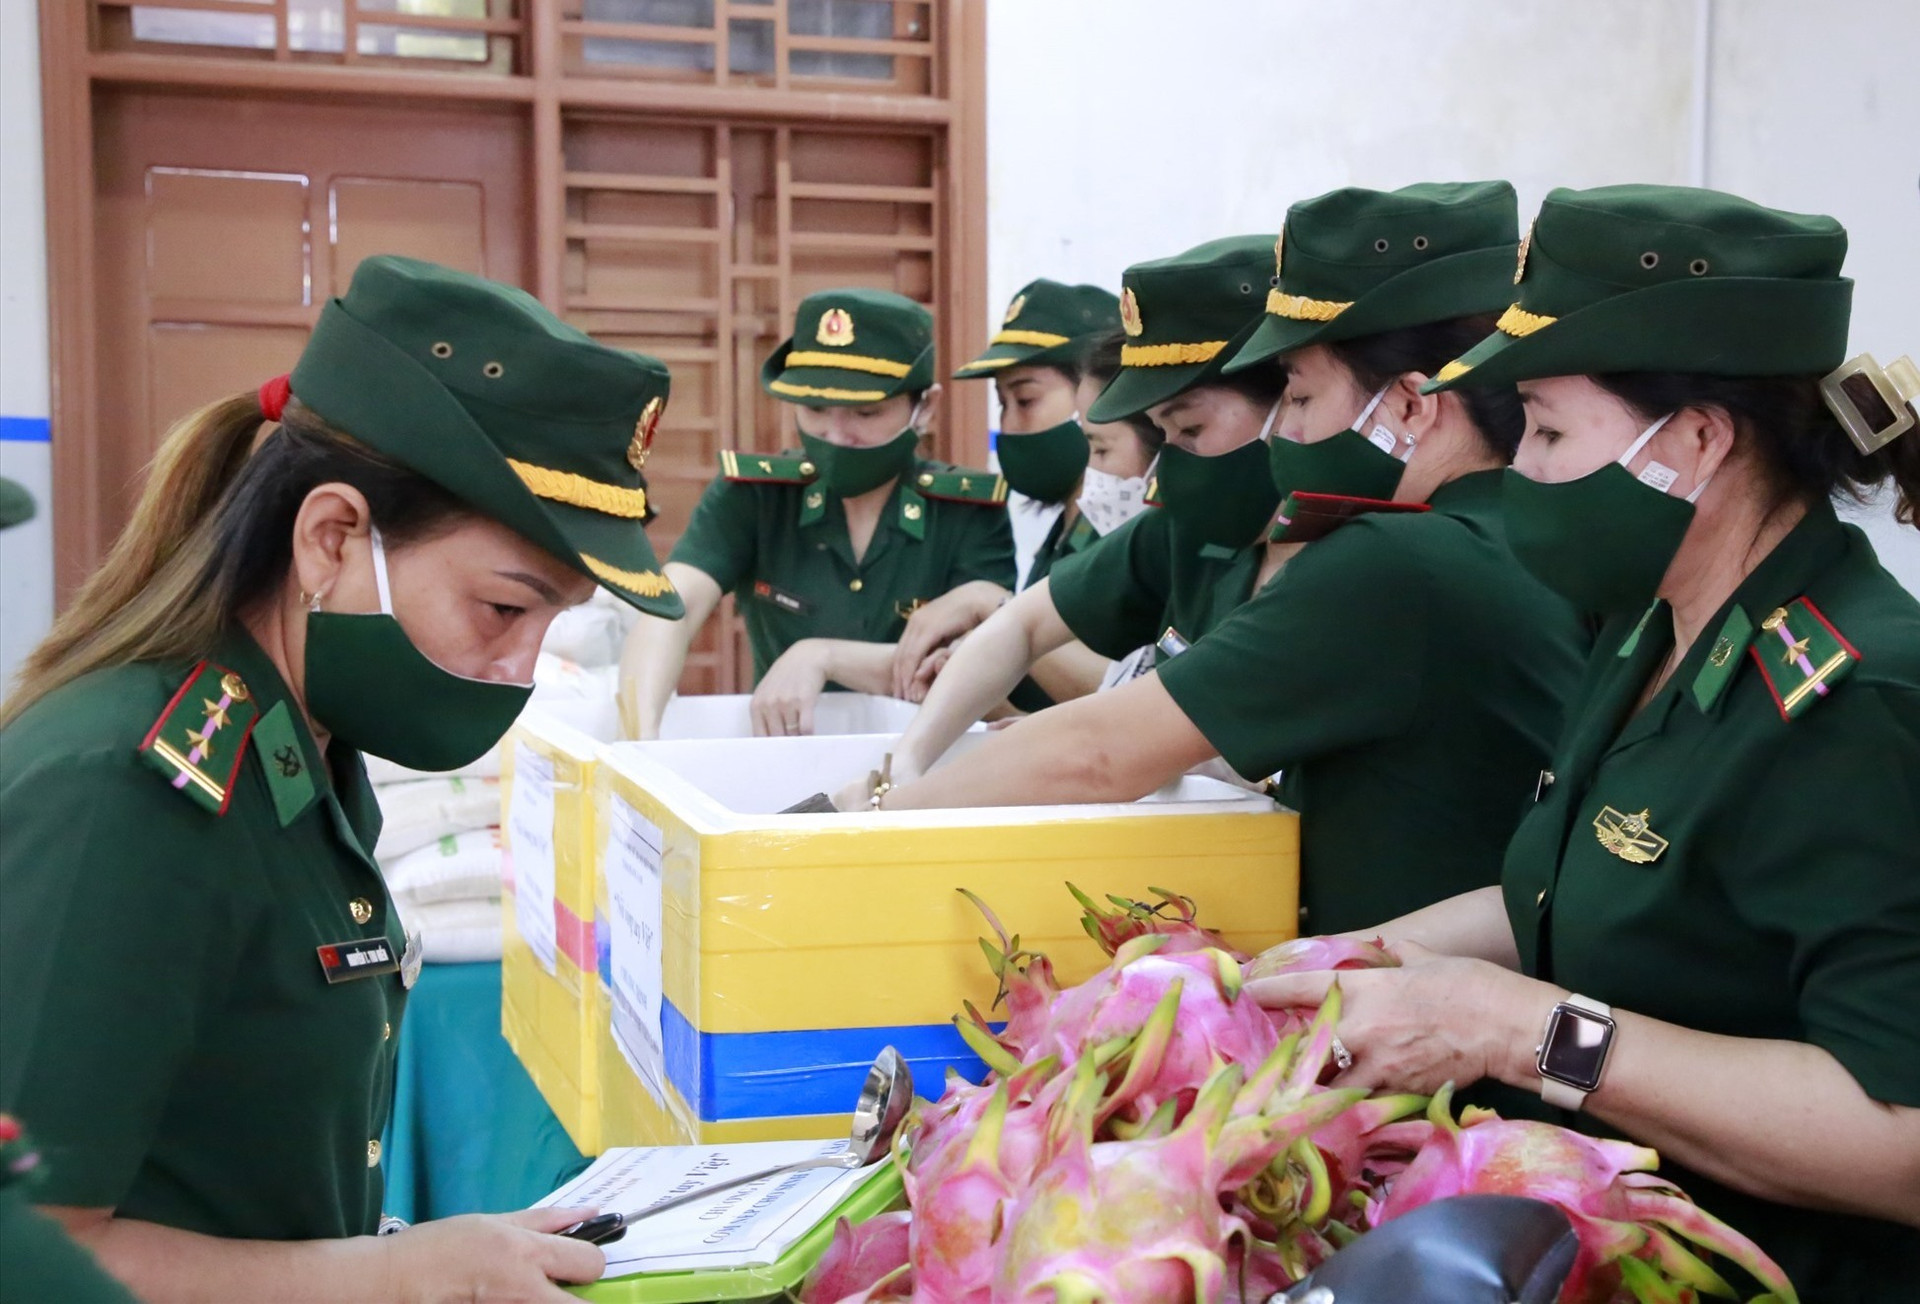 Hội viên Hội phụ nữ Bộ đội biên phòng mang cơm nếp đến cho sinh viên Lào tại ký túc xá trường Đại học Quảng Nam. Ảnh: T.C